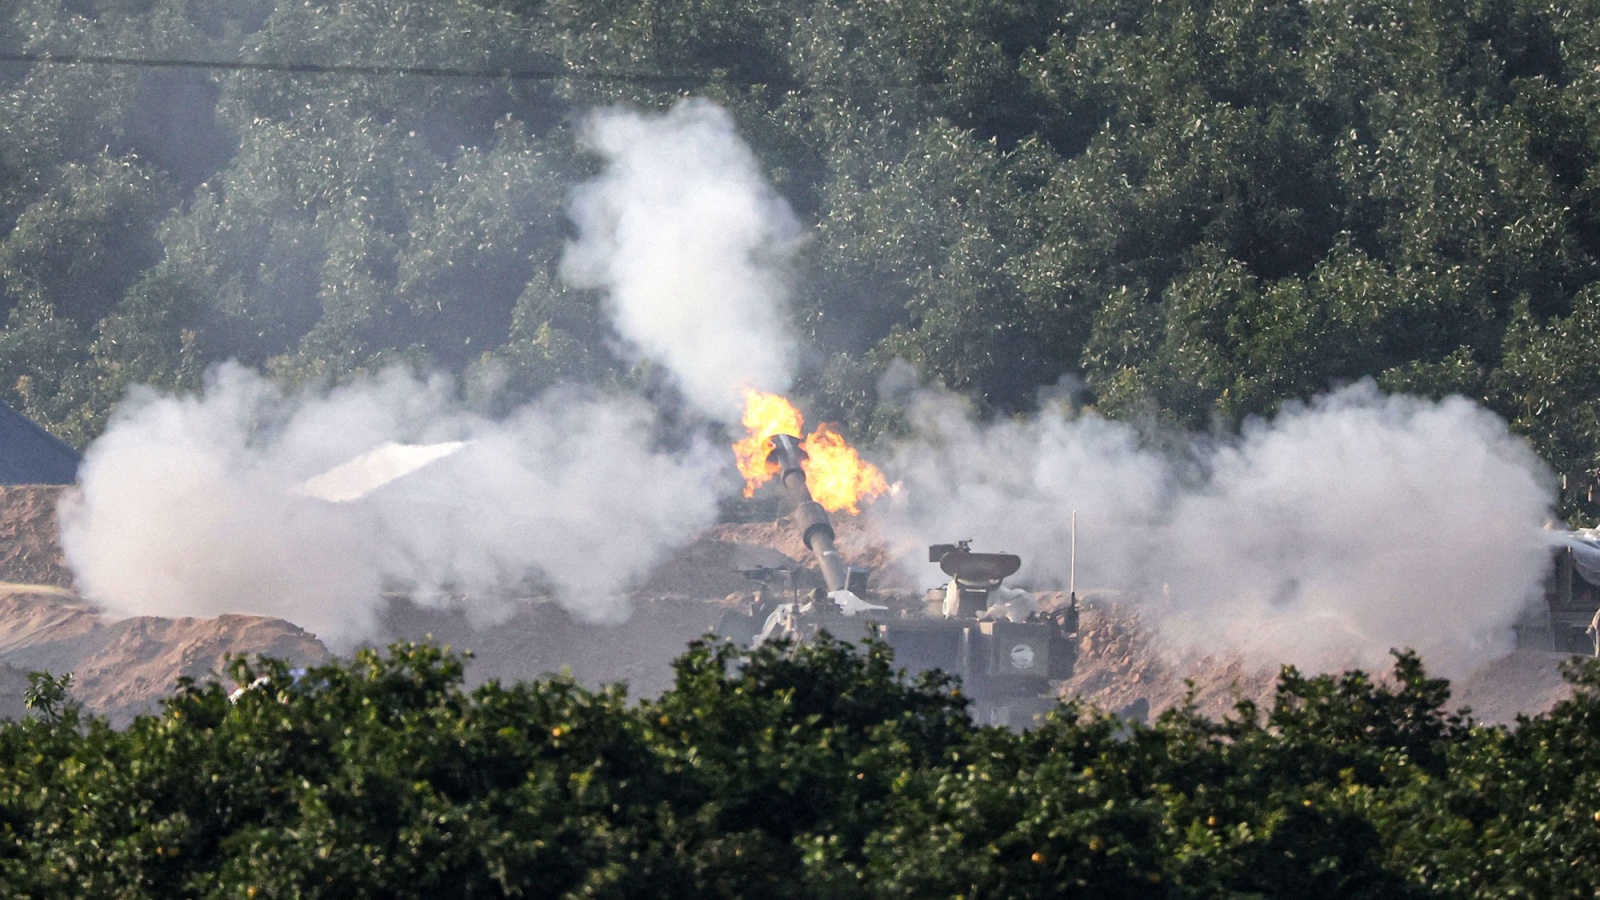 دبابة إسرائيلية تطلق النيران خلال تدريب عسكري (توضيحية)